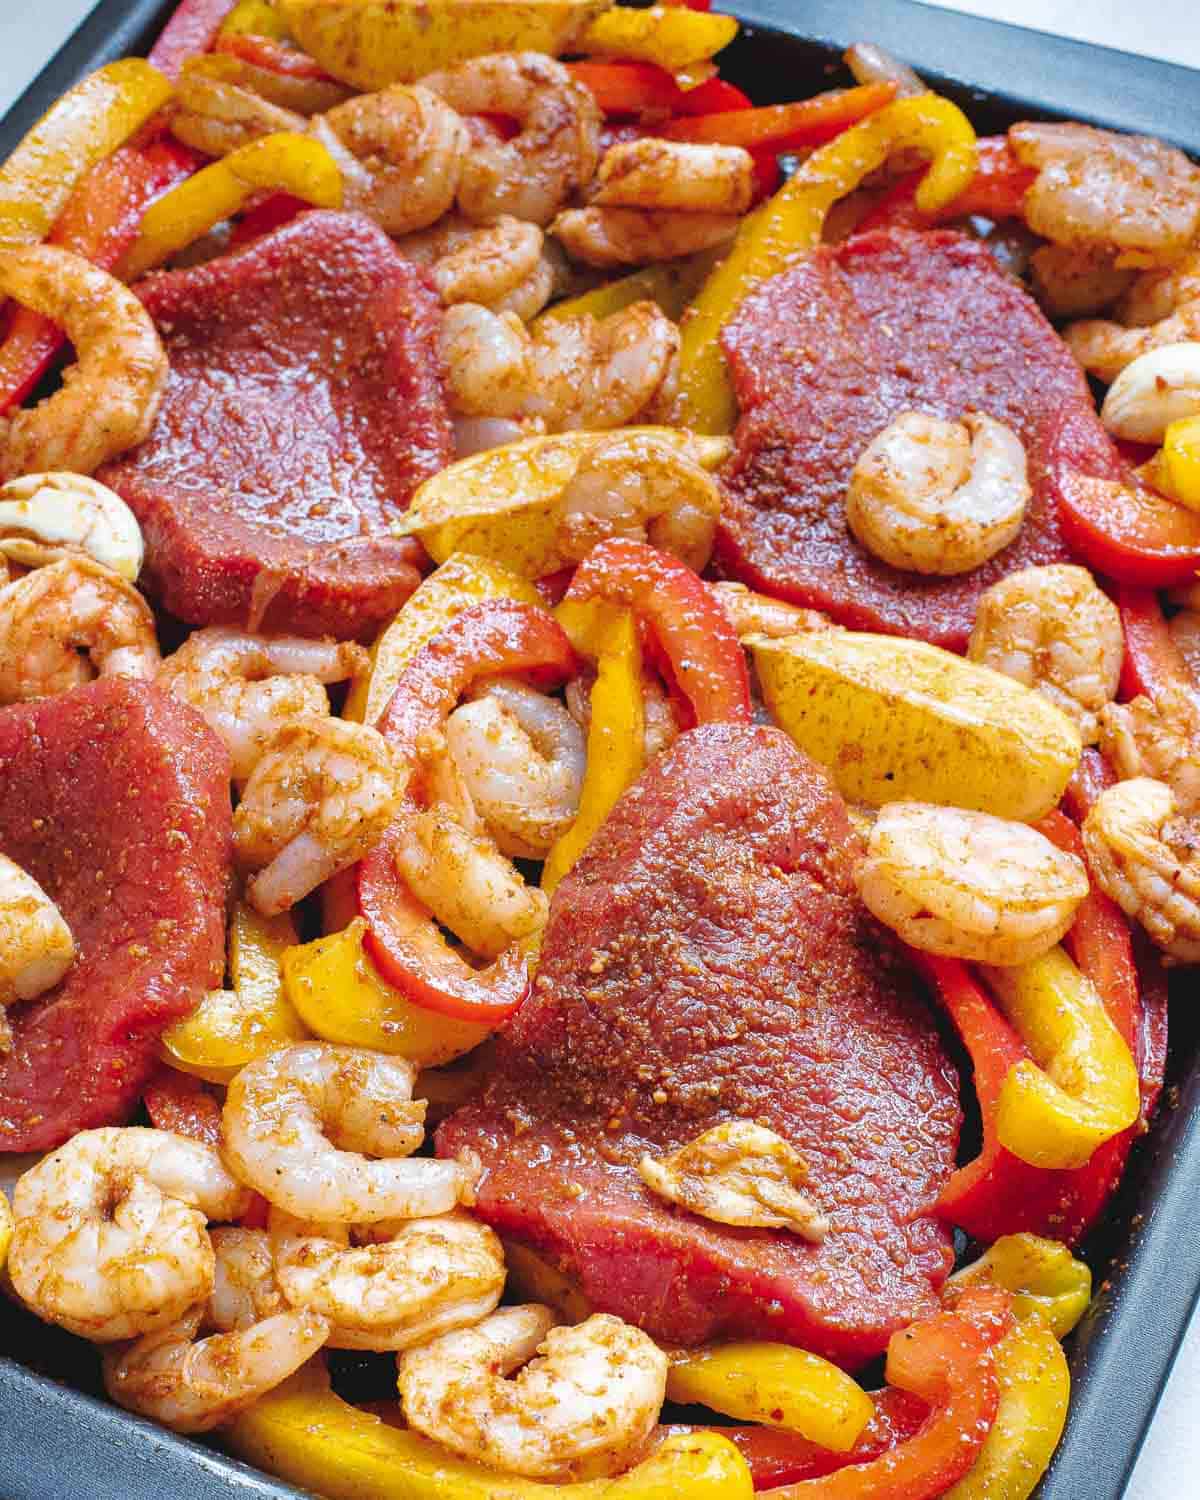 Sirloin steak, shrimp, peppers and onions tossed in fajita seasoning on a baking sheet.